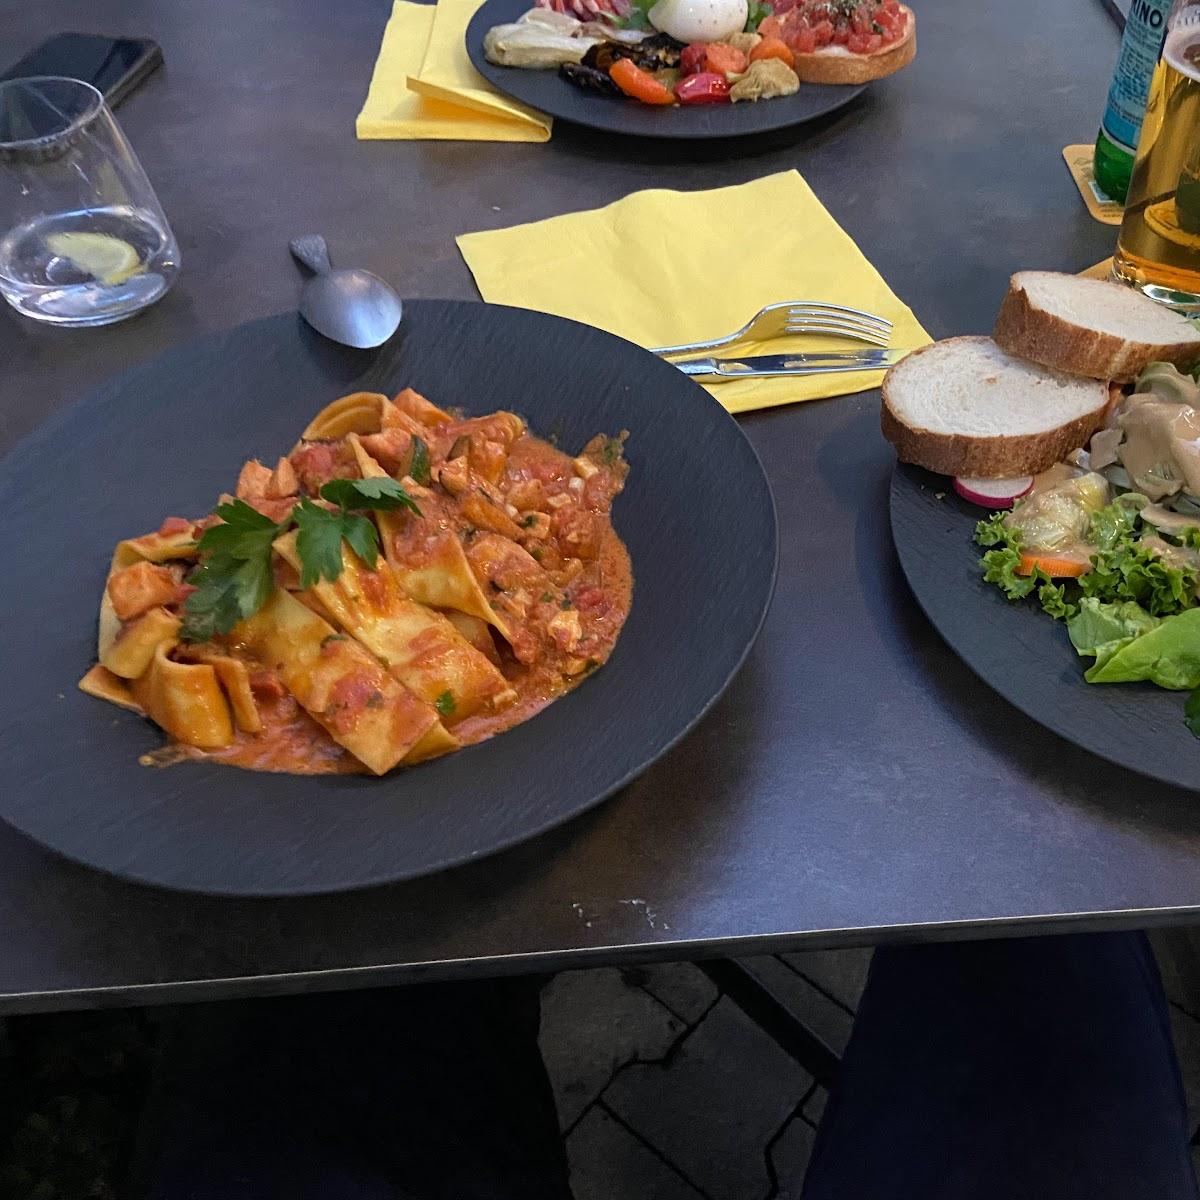 Restaurant "Carbonara  | Authentische, italienische Küche" in Würzburg